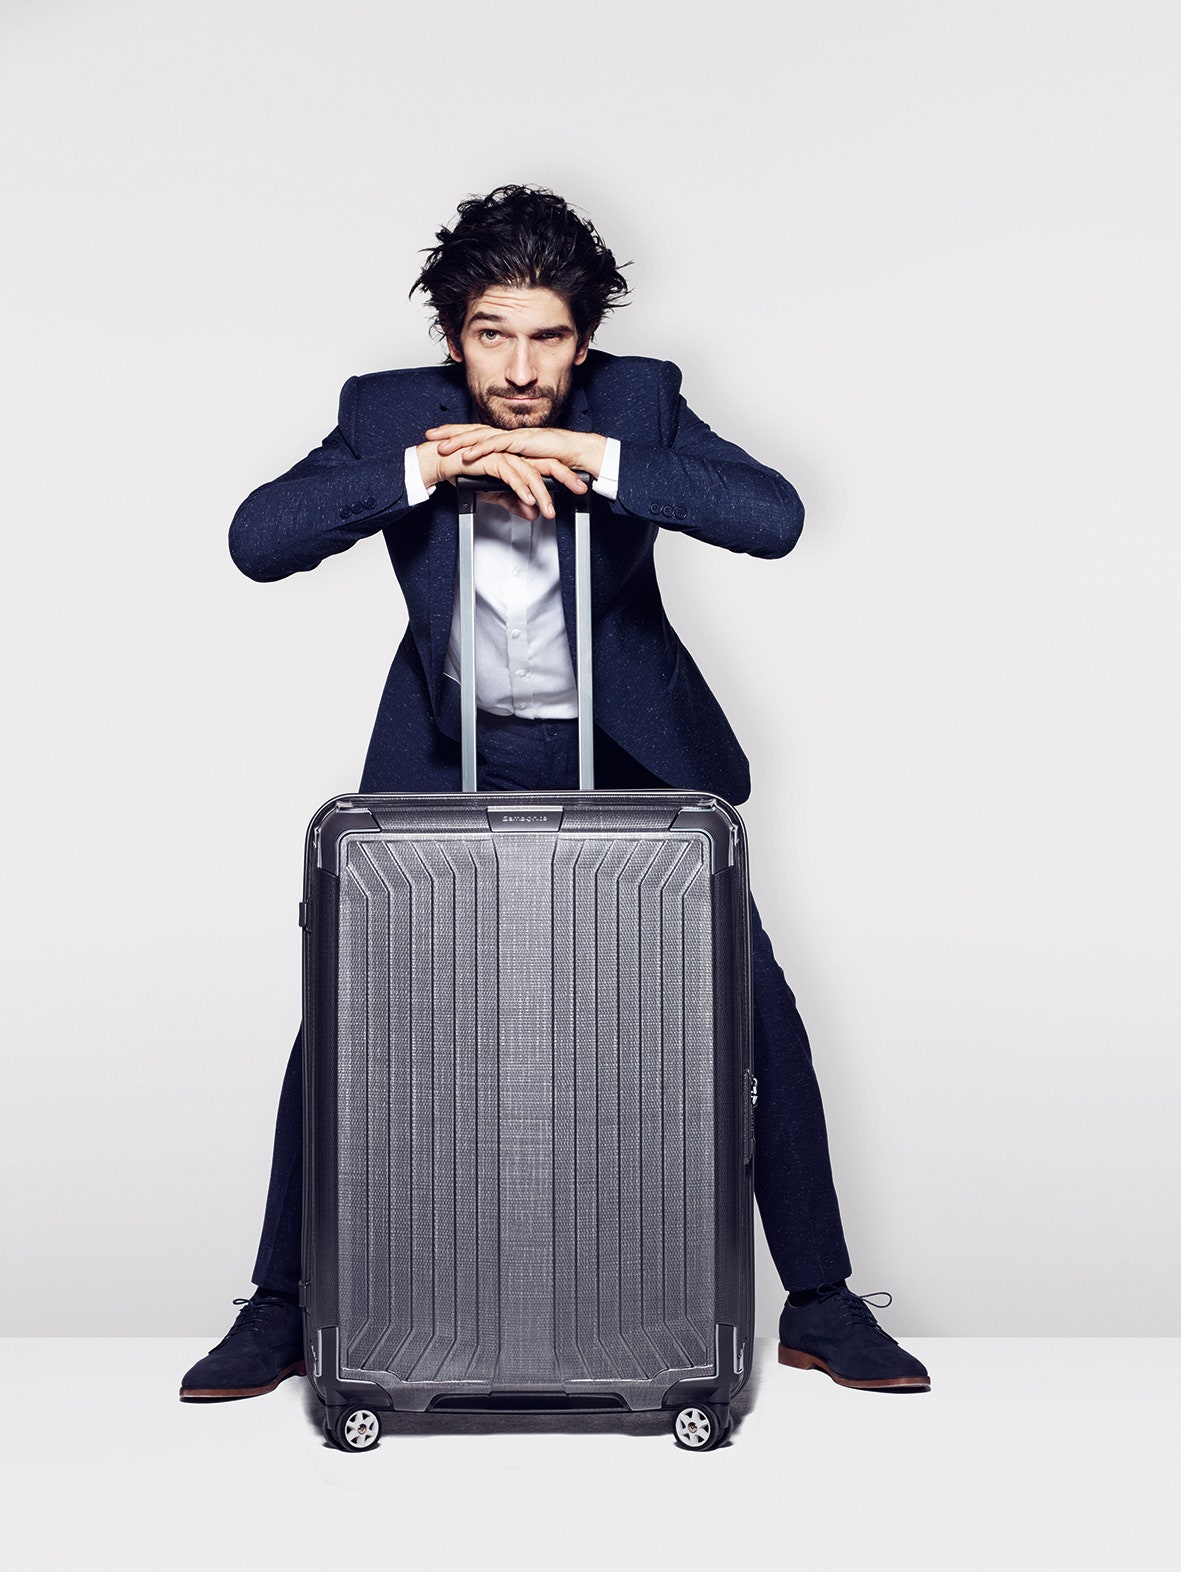 Samsonite и фотограф Джон Ранкин представили рекламную кампанию чемоданов бренда